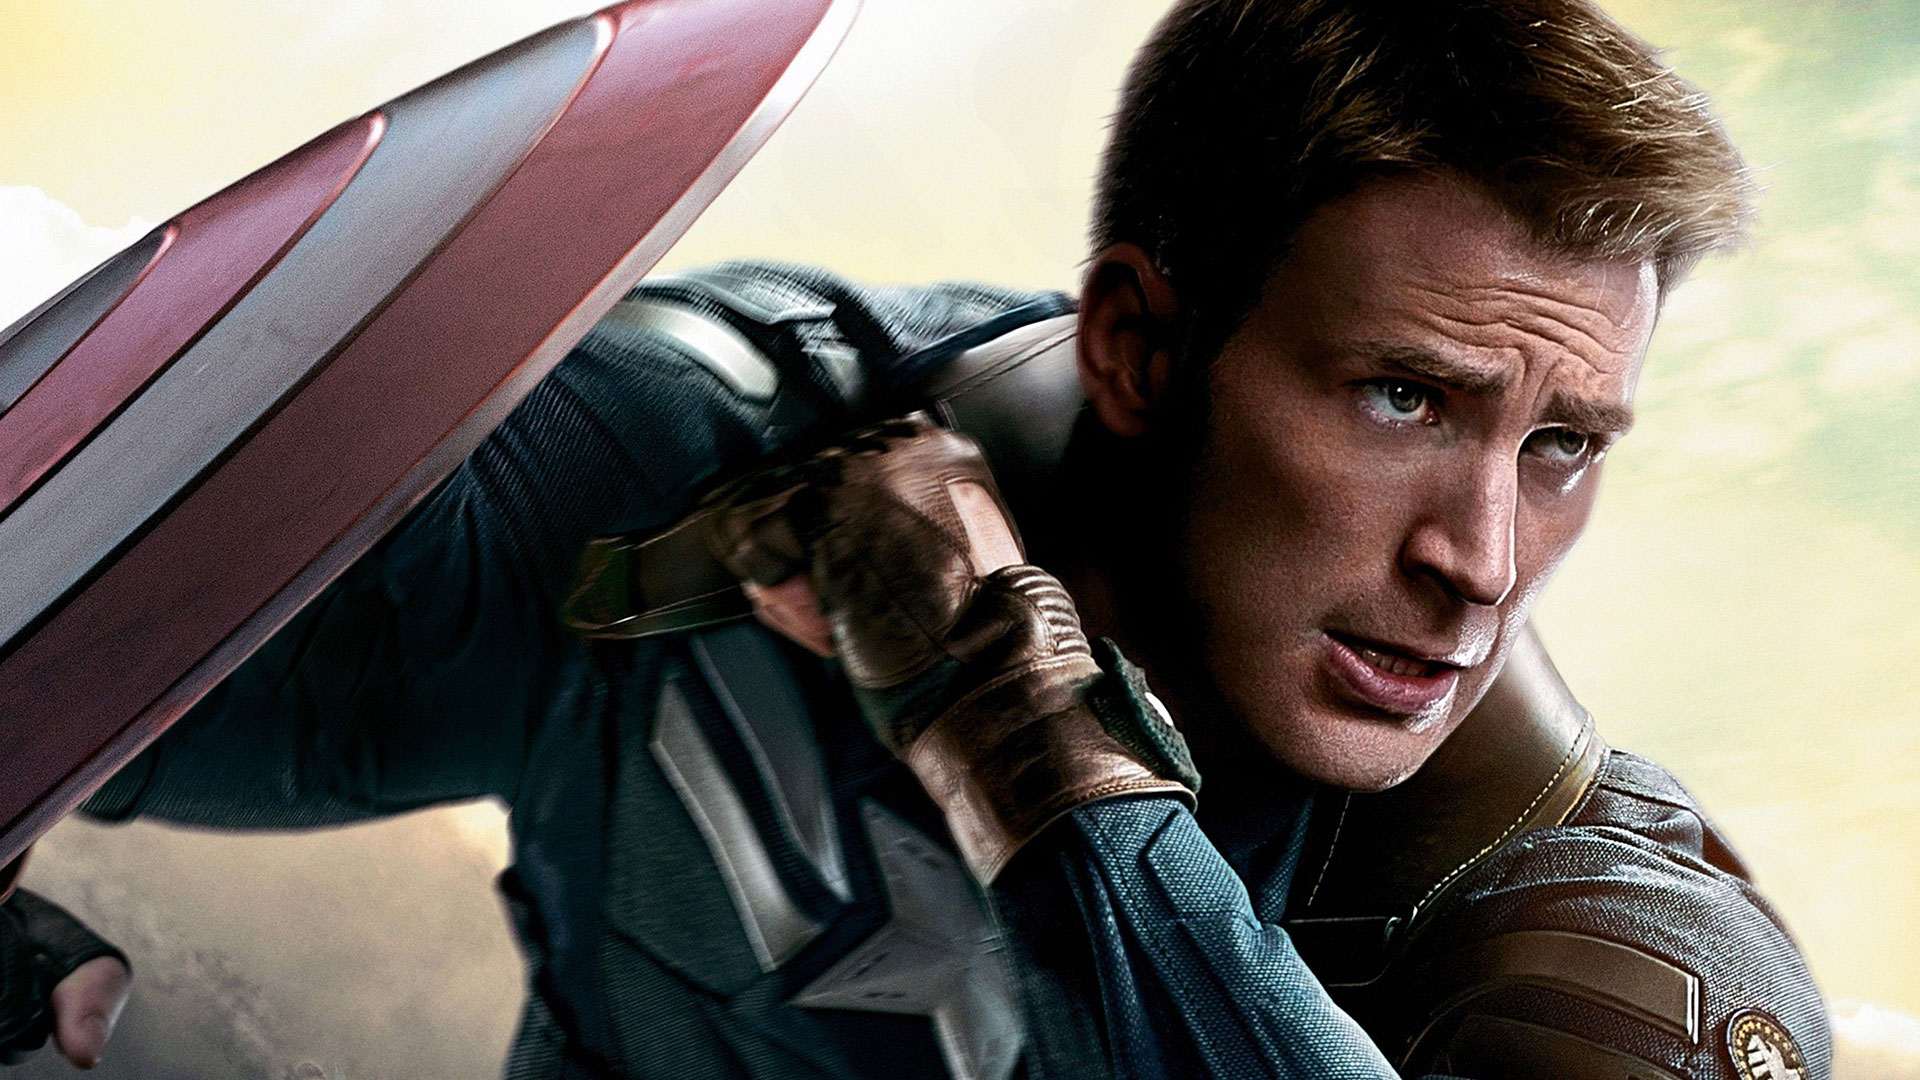 Tras tres meses de someterse a un programa de entrenamiento físico y táctico, Steve Rogers es encomendado a su primera misión como Capitán América. Armado con un escudo indestructible, emprenderá la guerra contra el mal como líder de los Vengadores. (Foto cortesía)